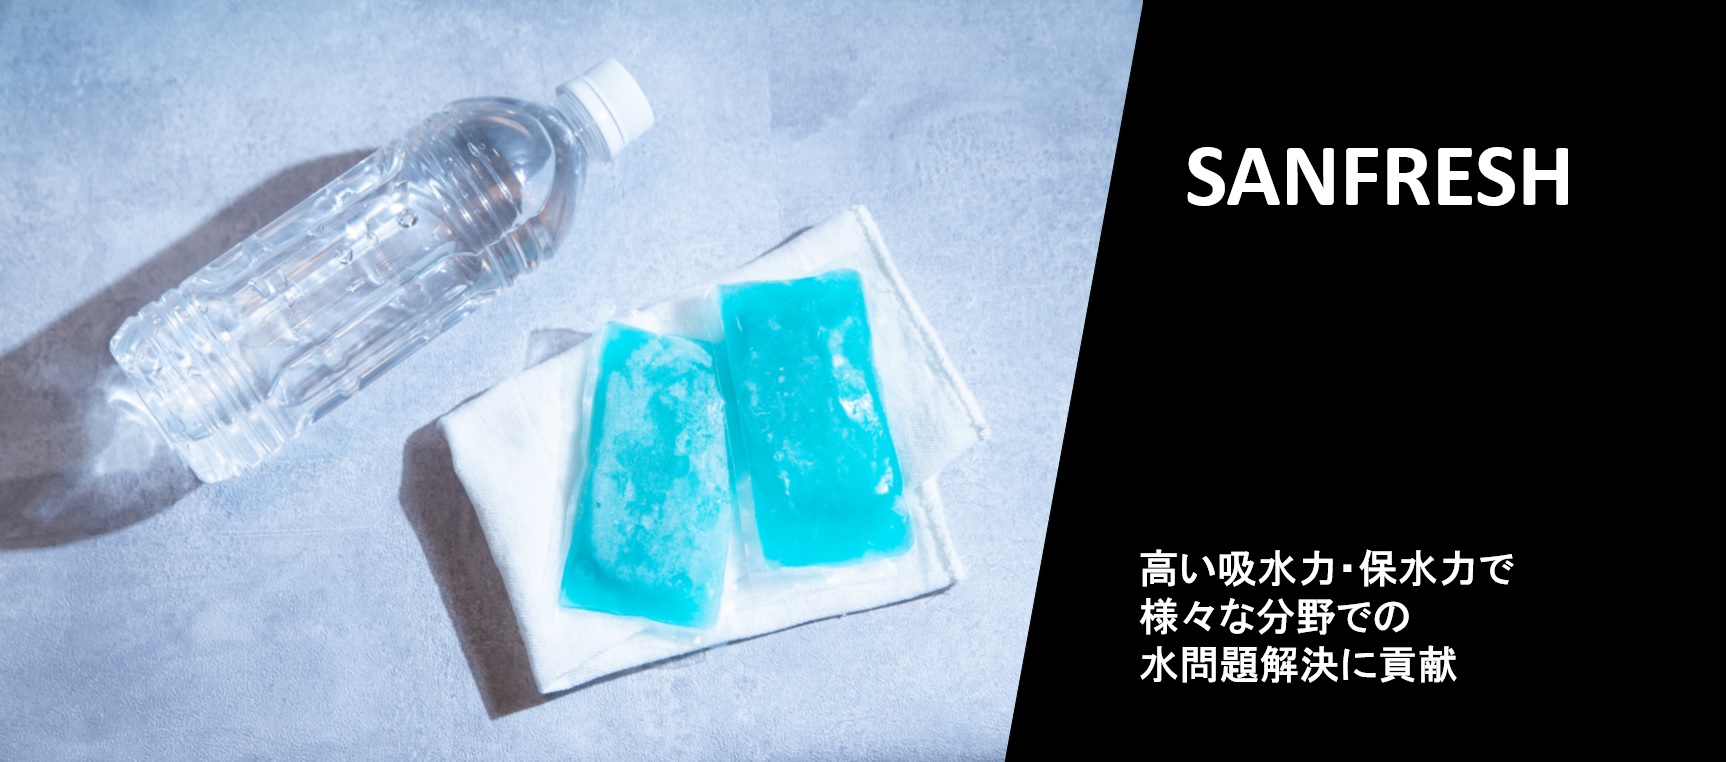 非衛材用 高吸水性樹脂(SAP)『サンフレッシュ』製品紹介ページを公開いたしました。